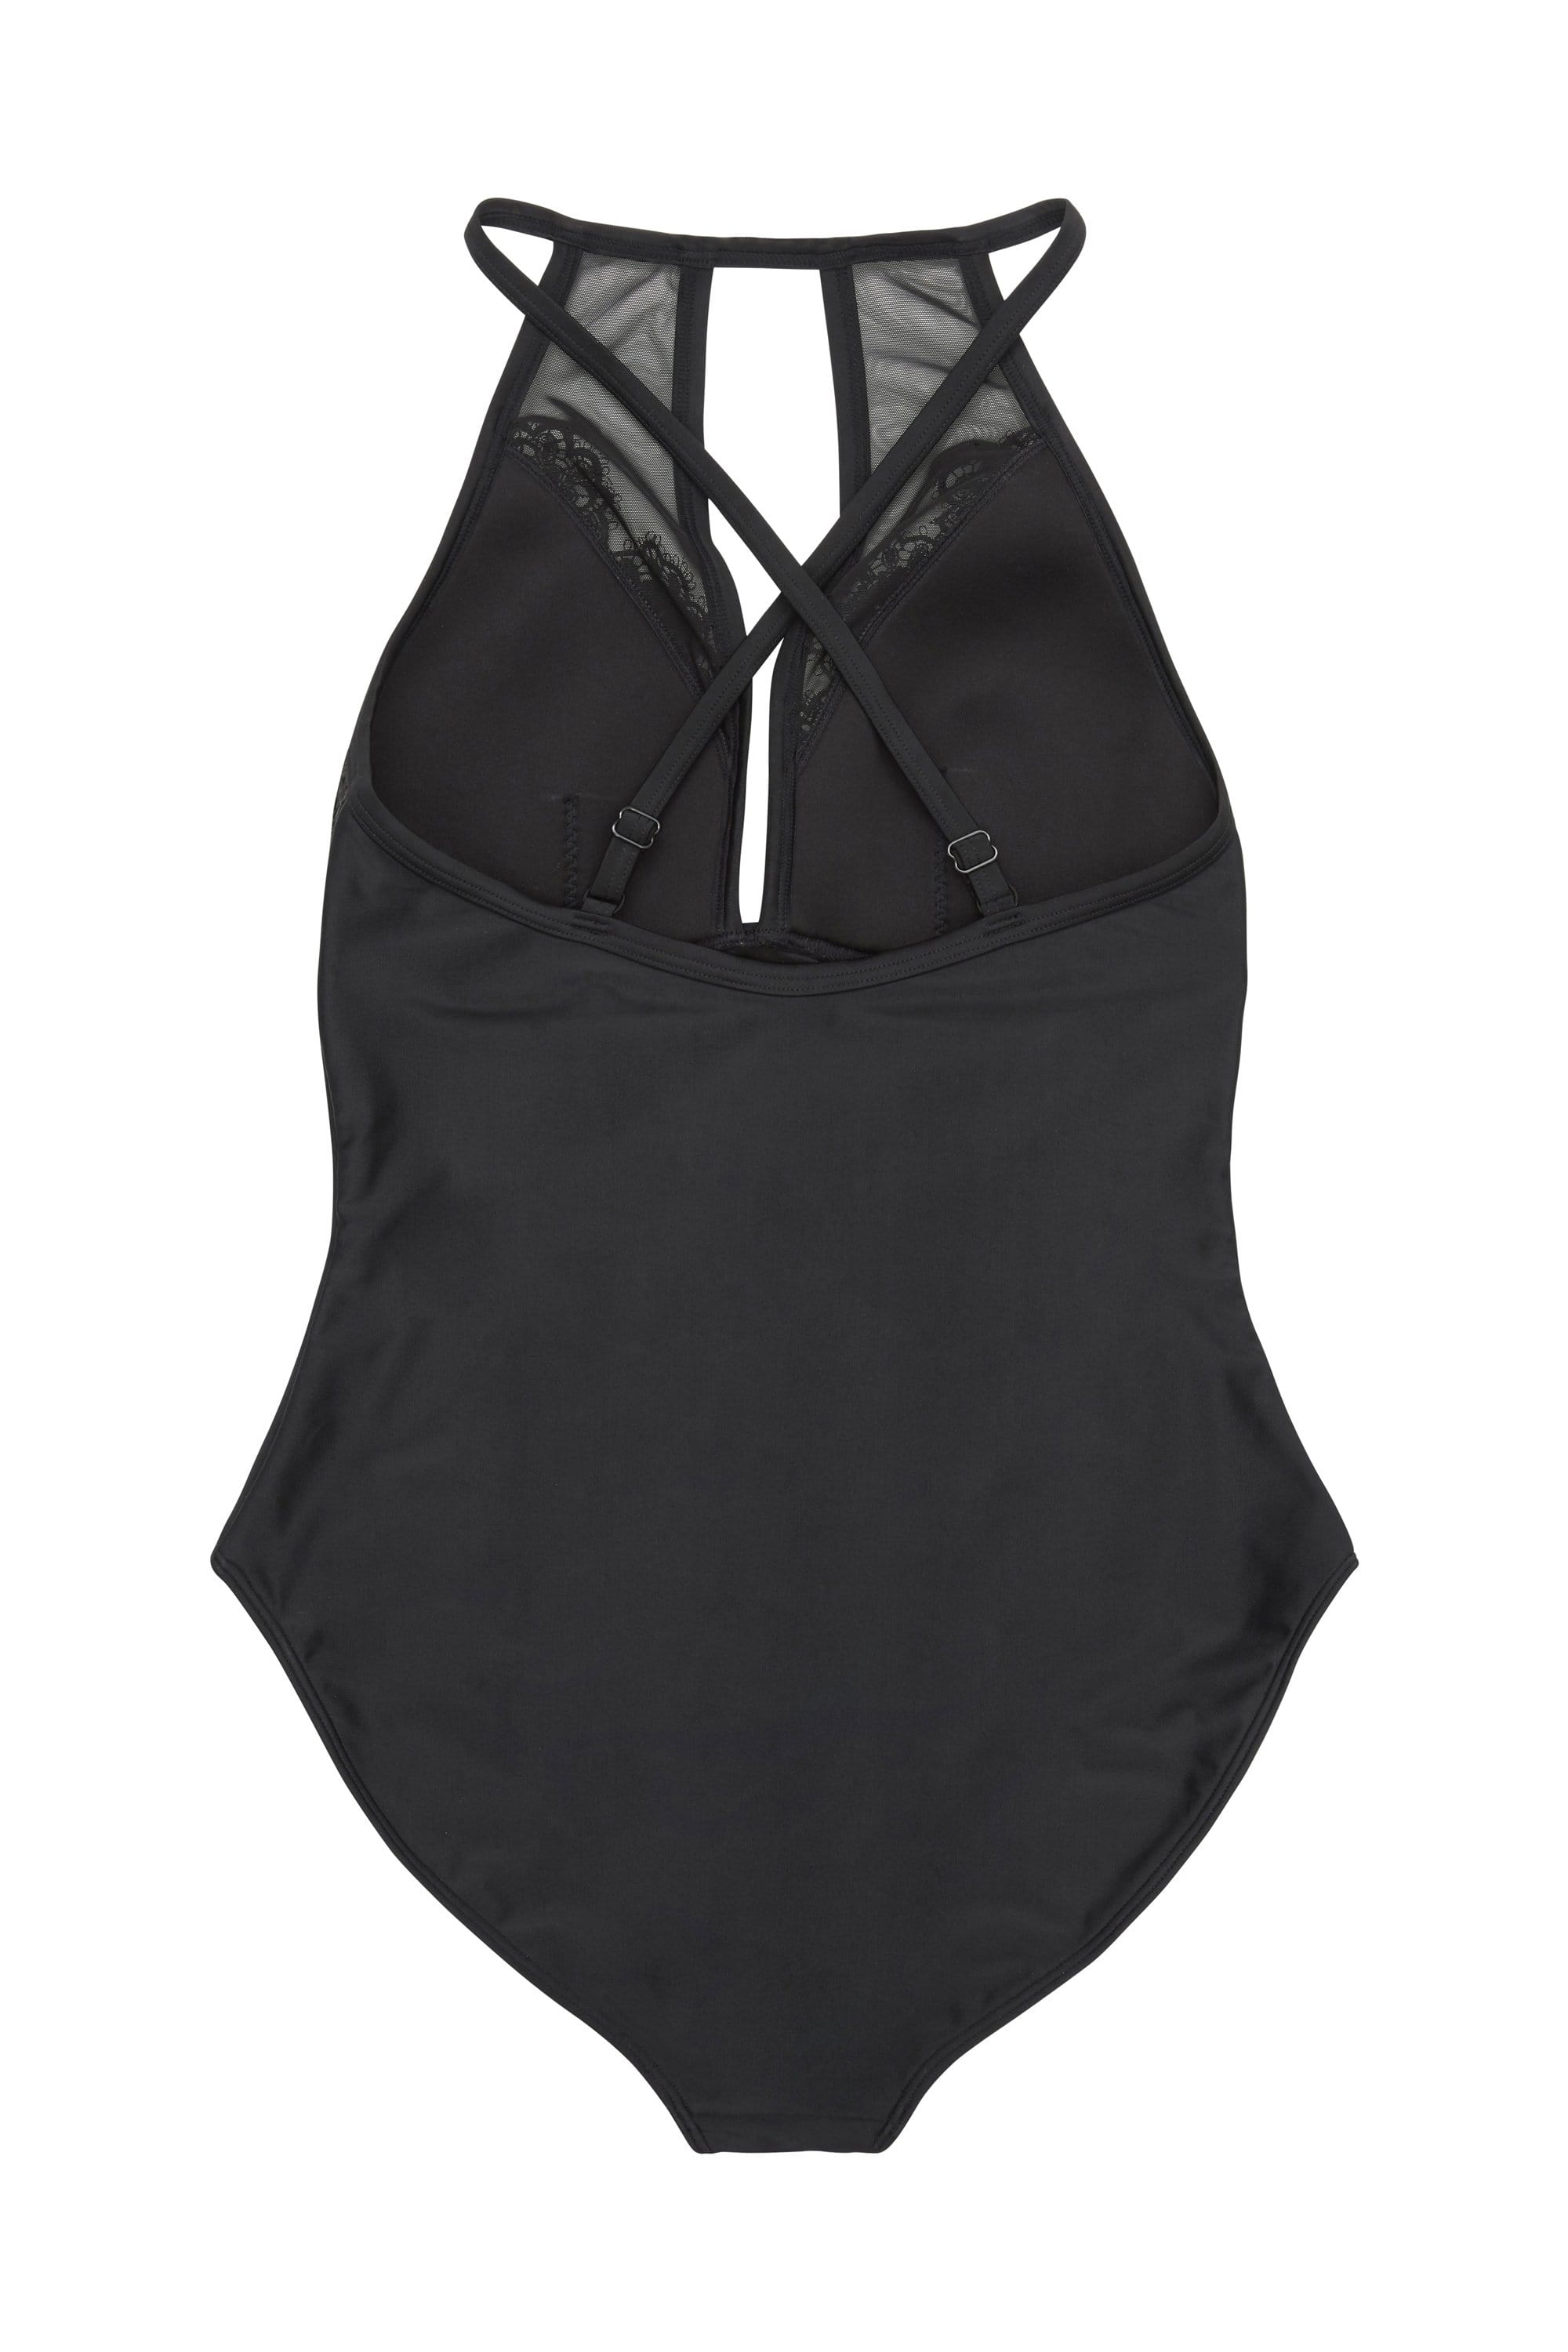 Hunter McGrady Plus Size/Curve Black High Neck Lace Panel Swimsuit